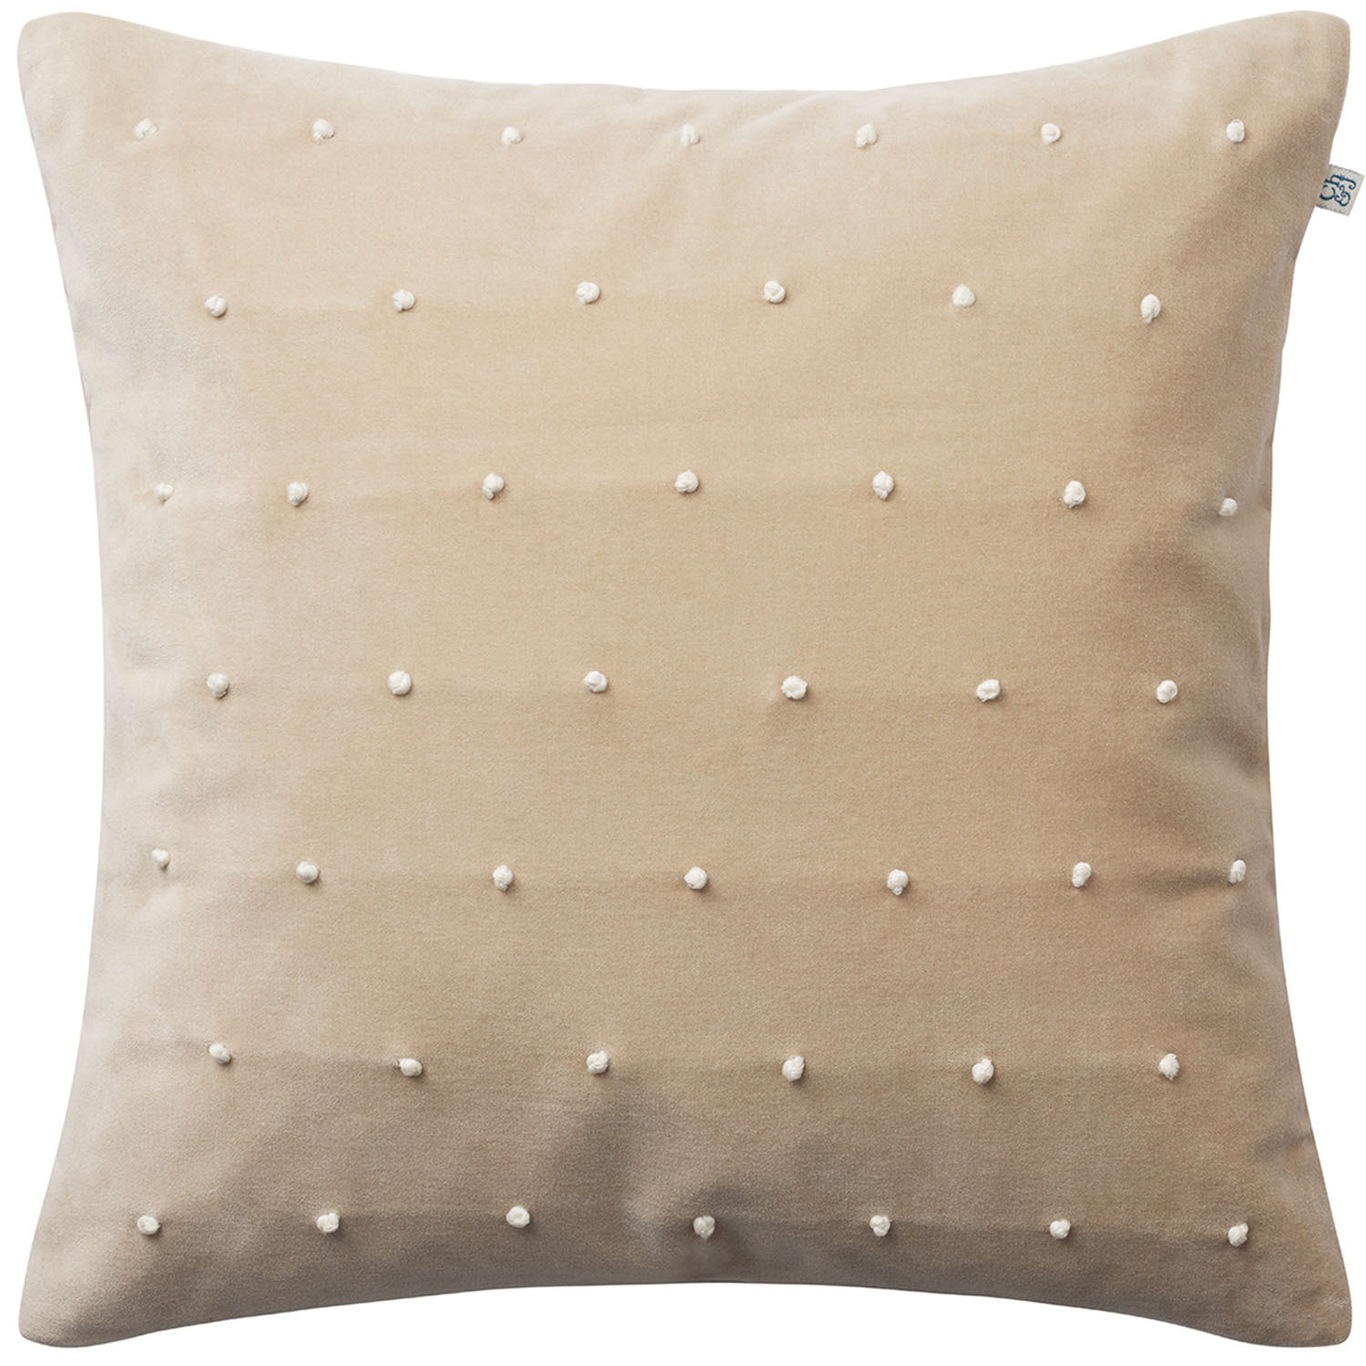 Roma Cushion Cover Tan/Off-white, 50x50 cm